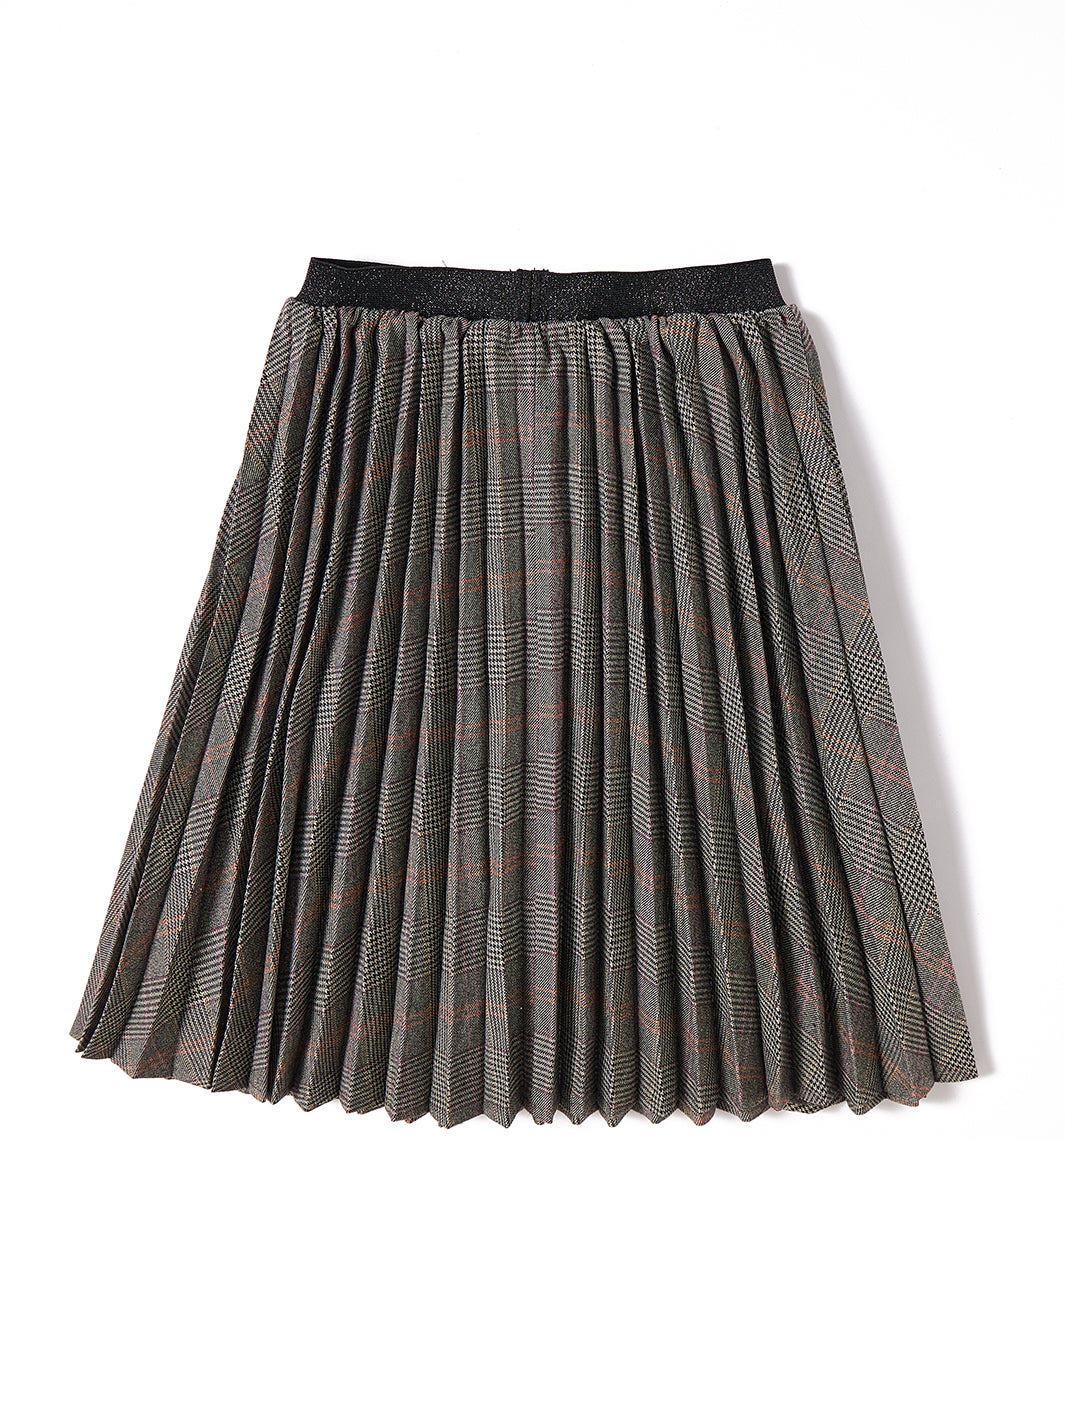 Plaid Accordion Pleated Skirt